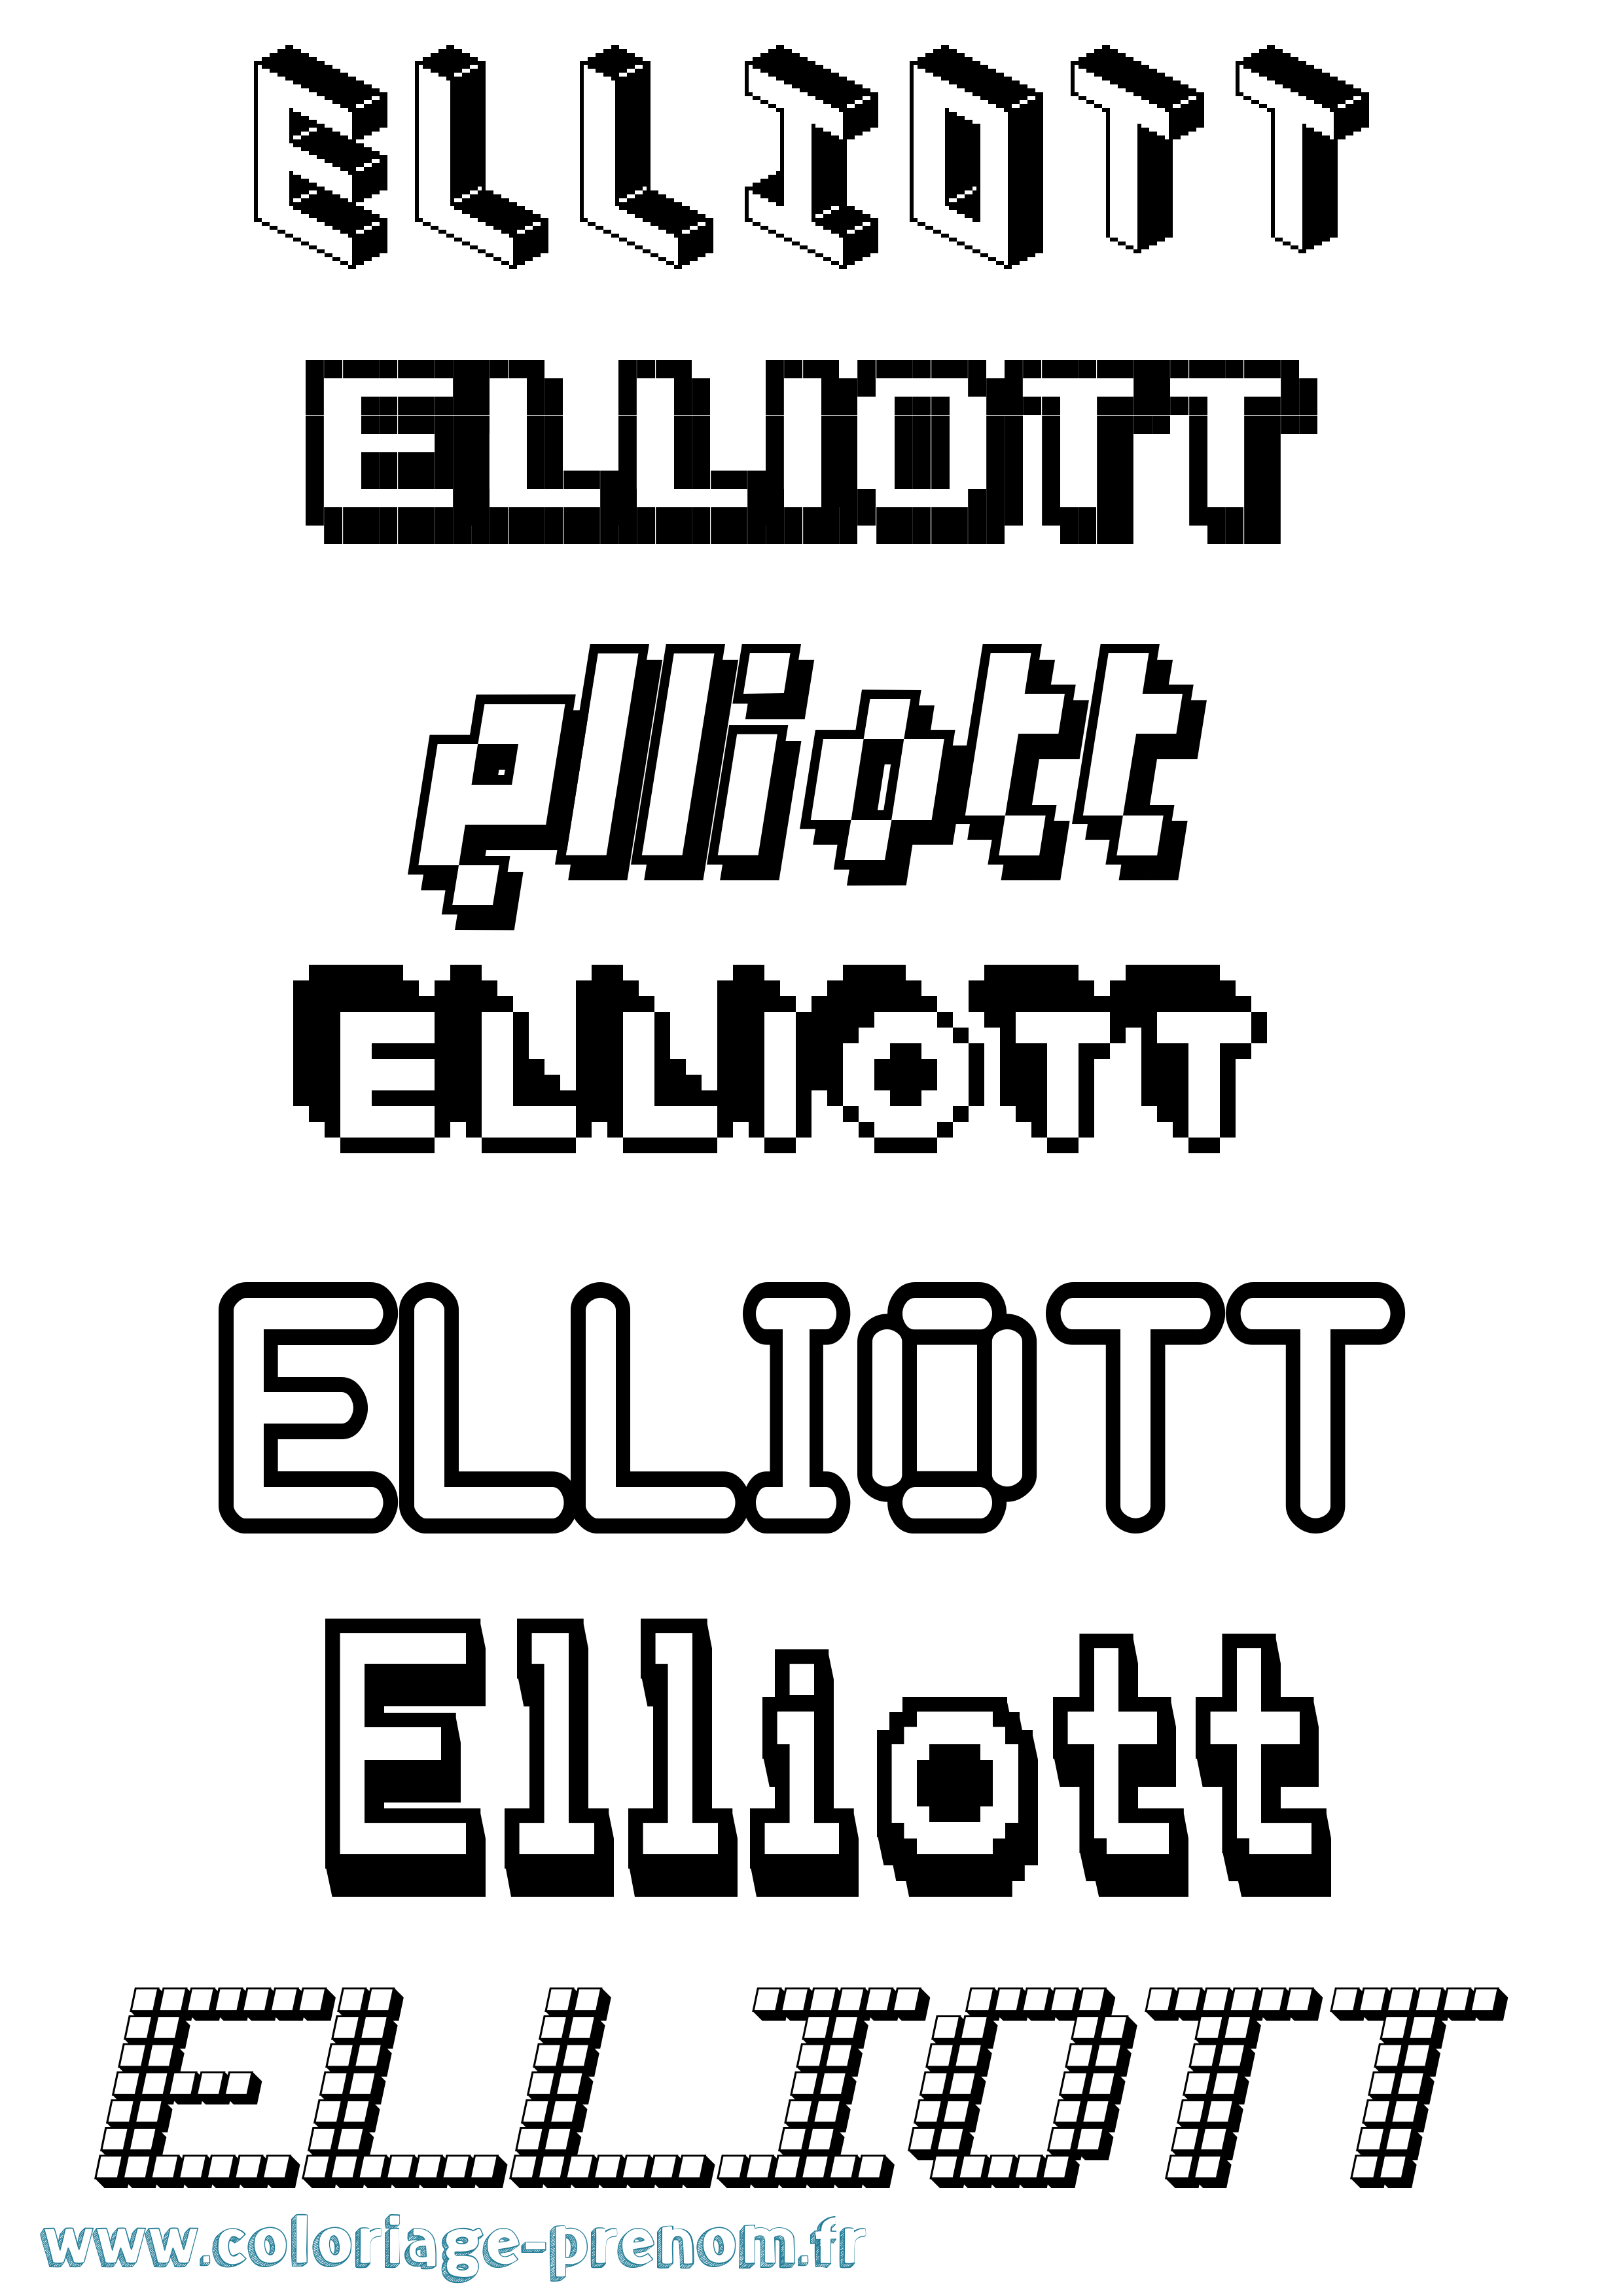 Coloriage prénom Elliott Pixel